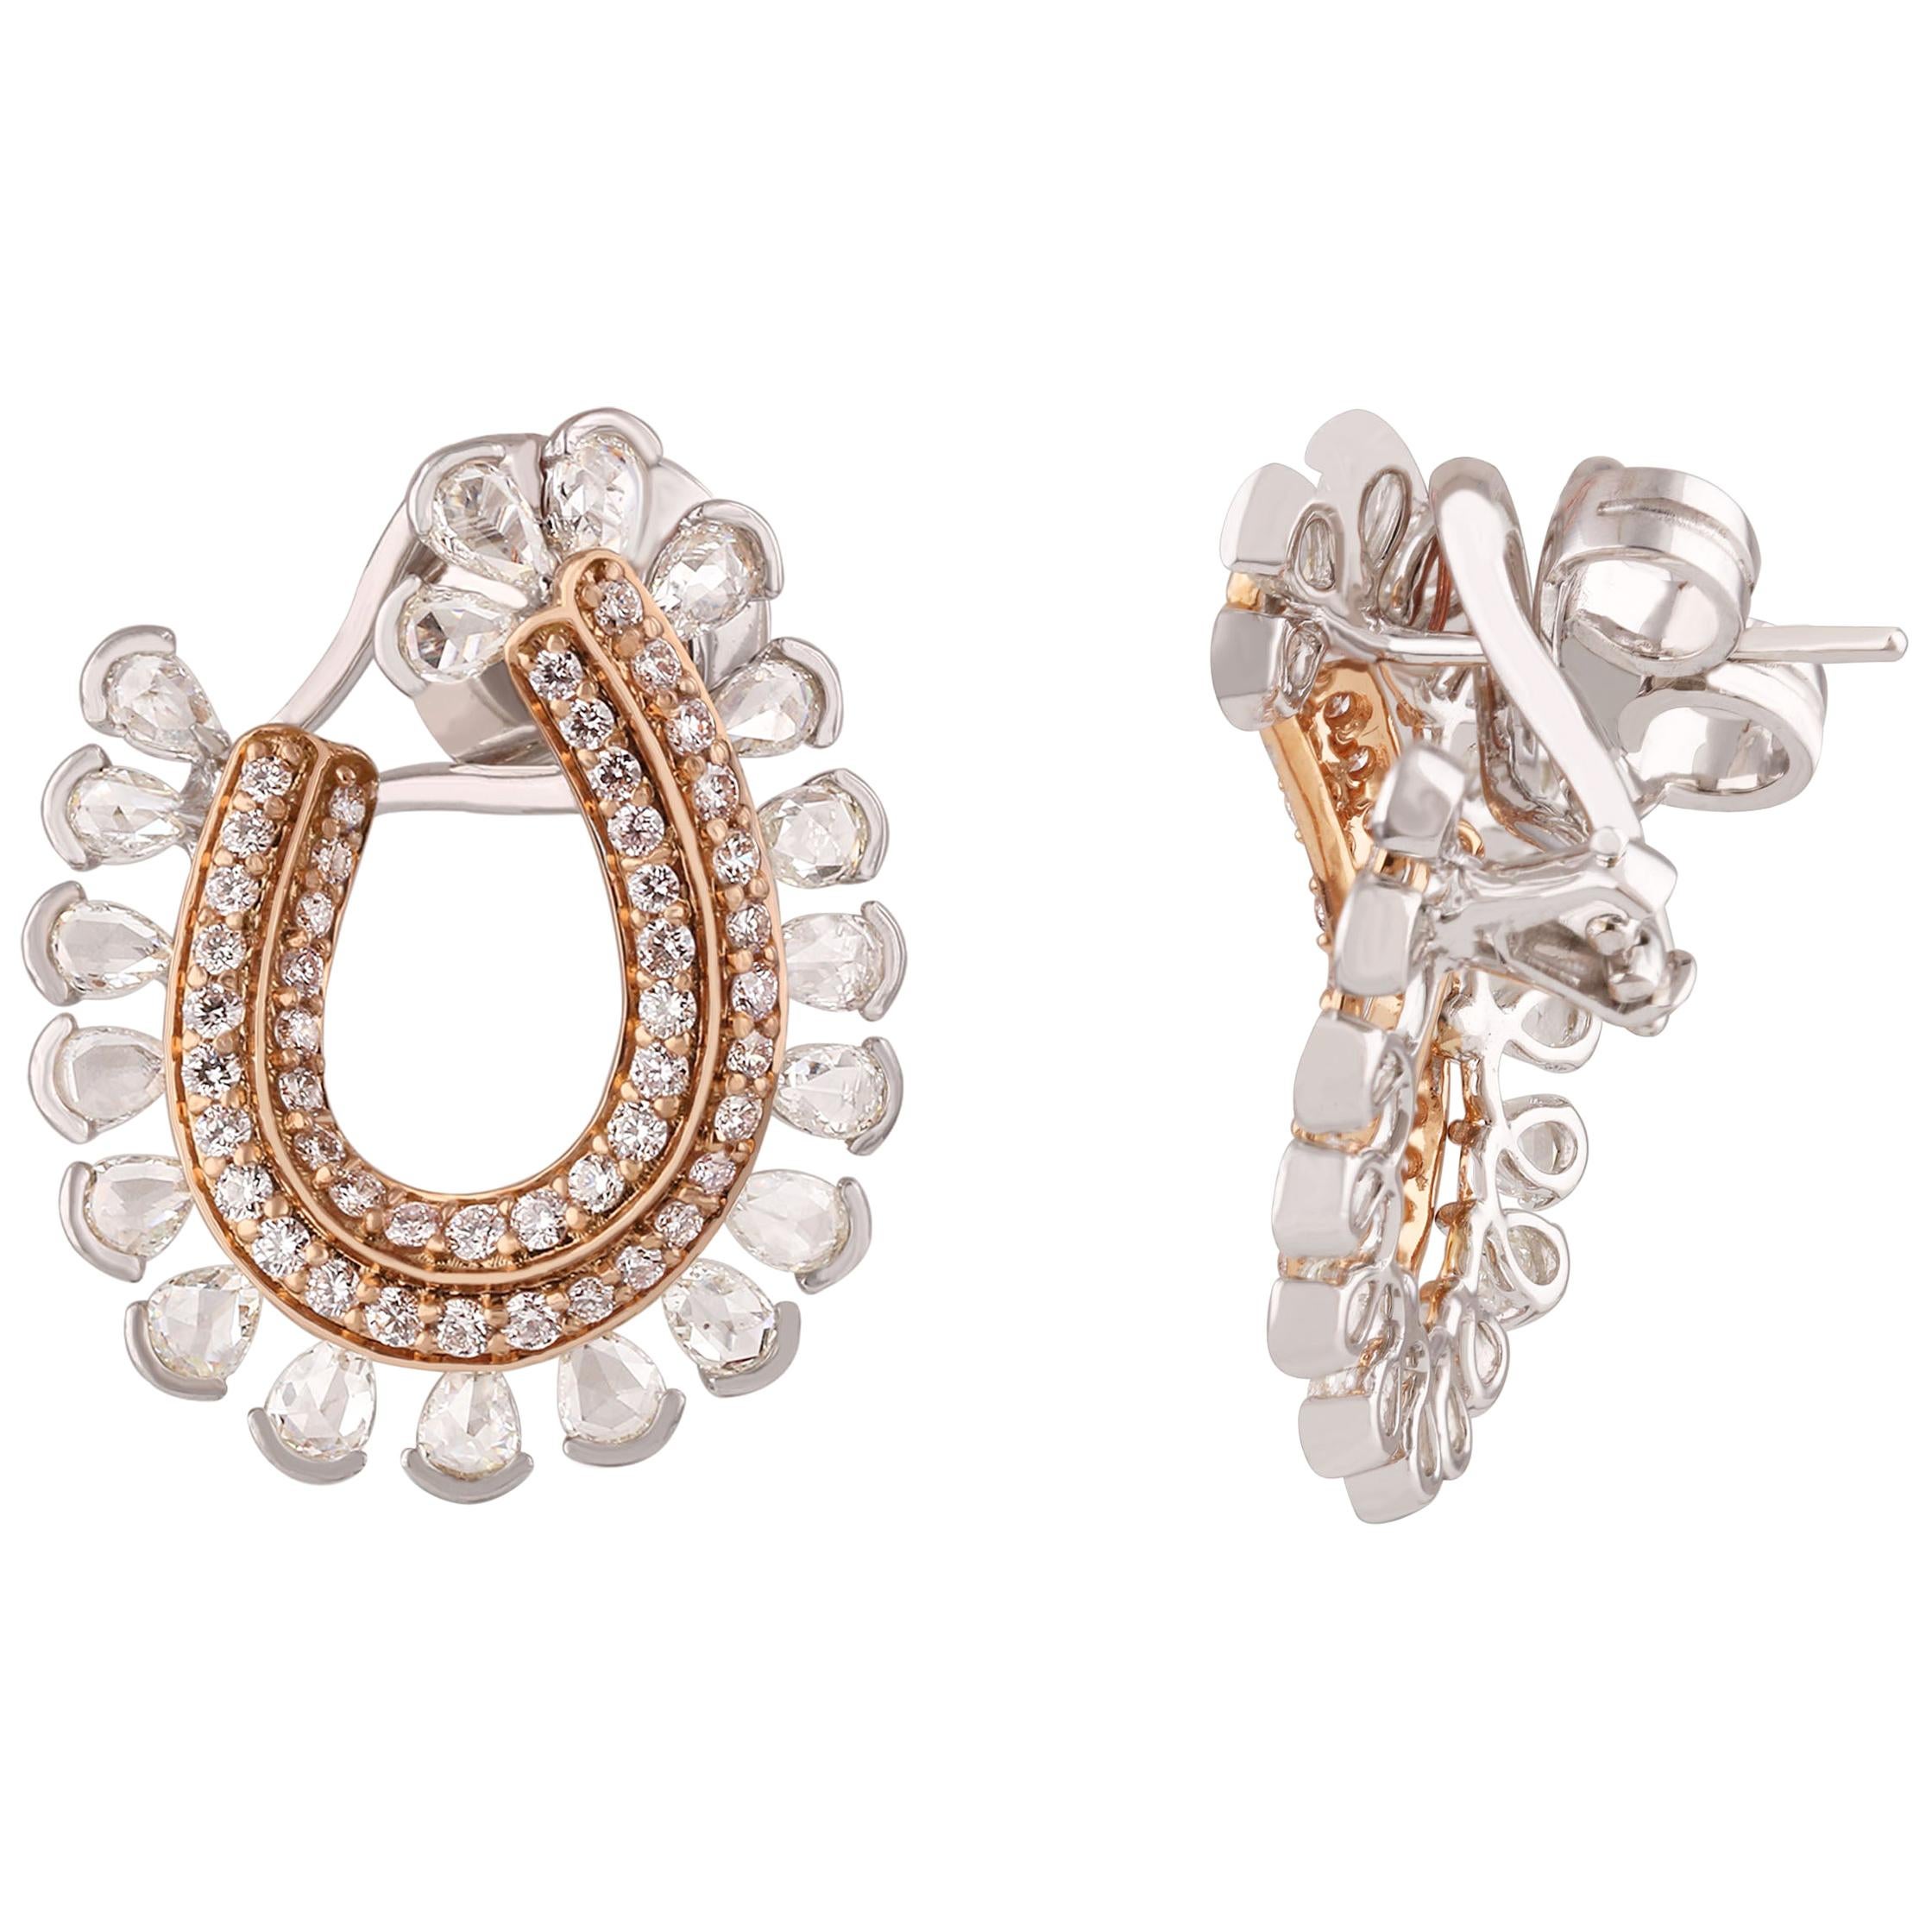 Studio Rêves Rosecut and Brilliant Cut Diamond Hoop Earrings in 18 Karat Gold For Sale